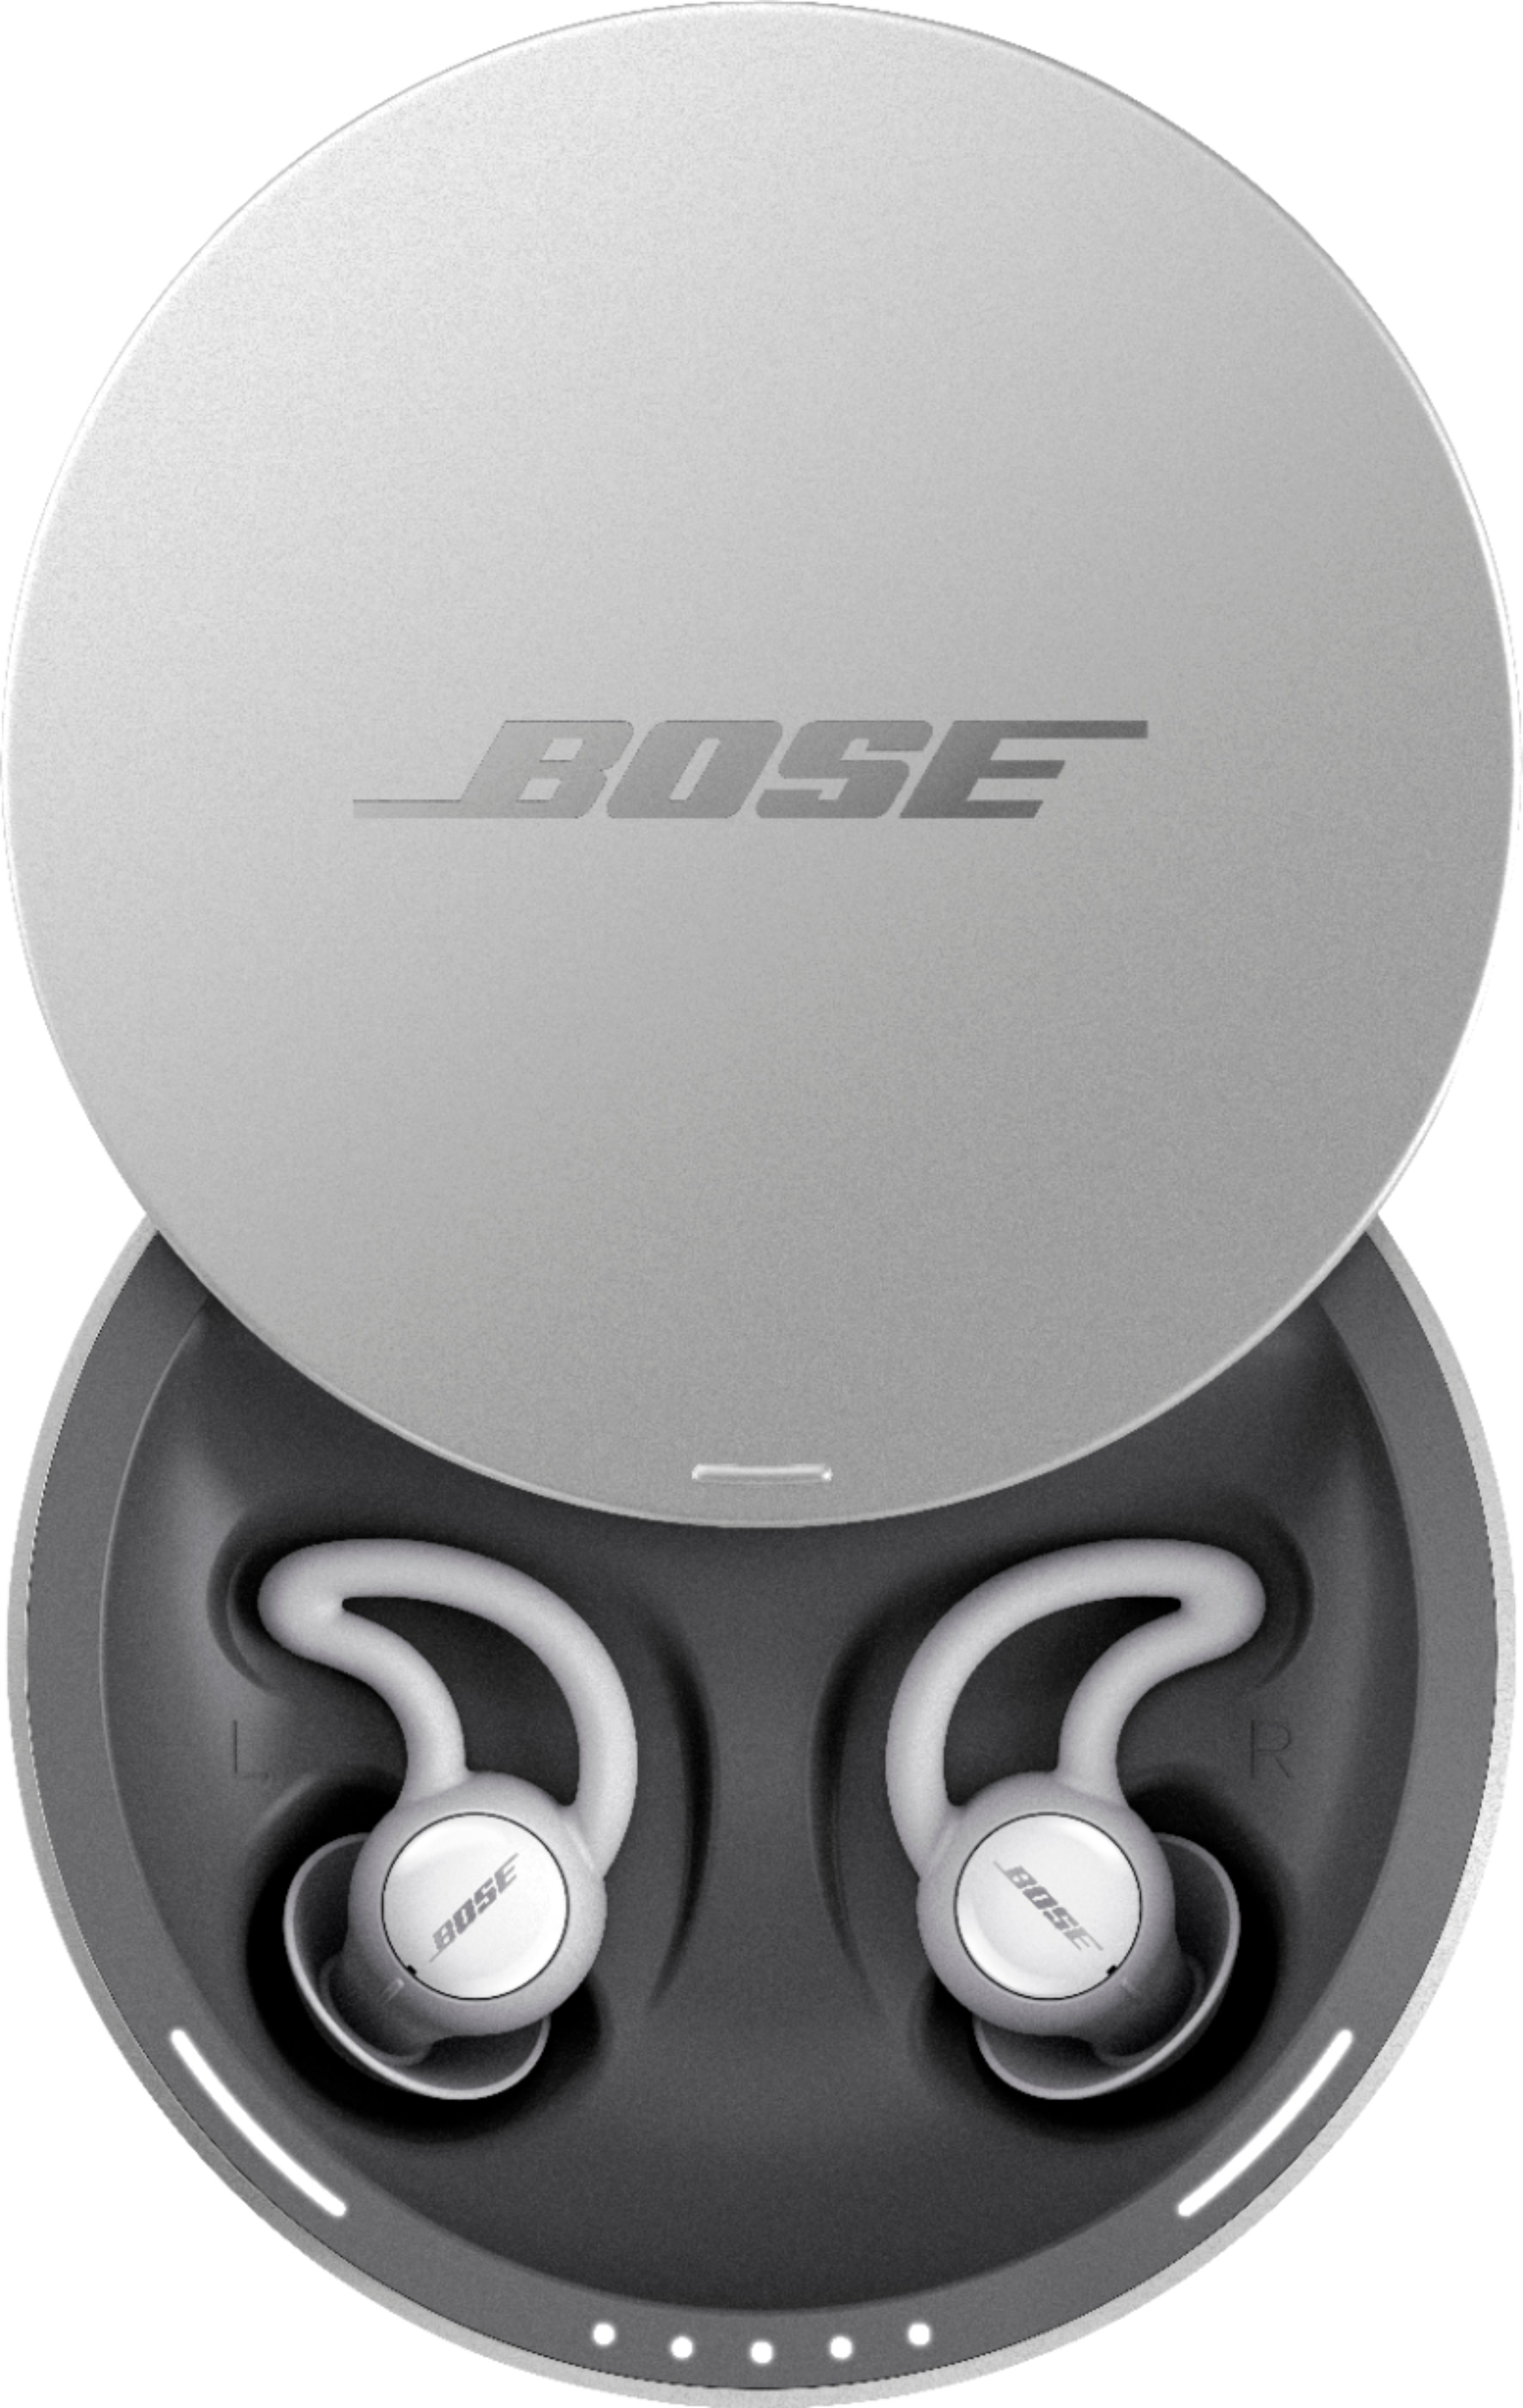 som resultat Caius Tilkalde Bose Noise-masking sleepbuds White 785593-0010 - Best Buy